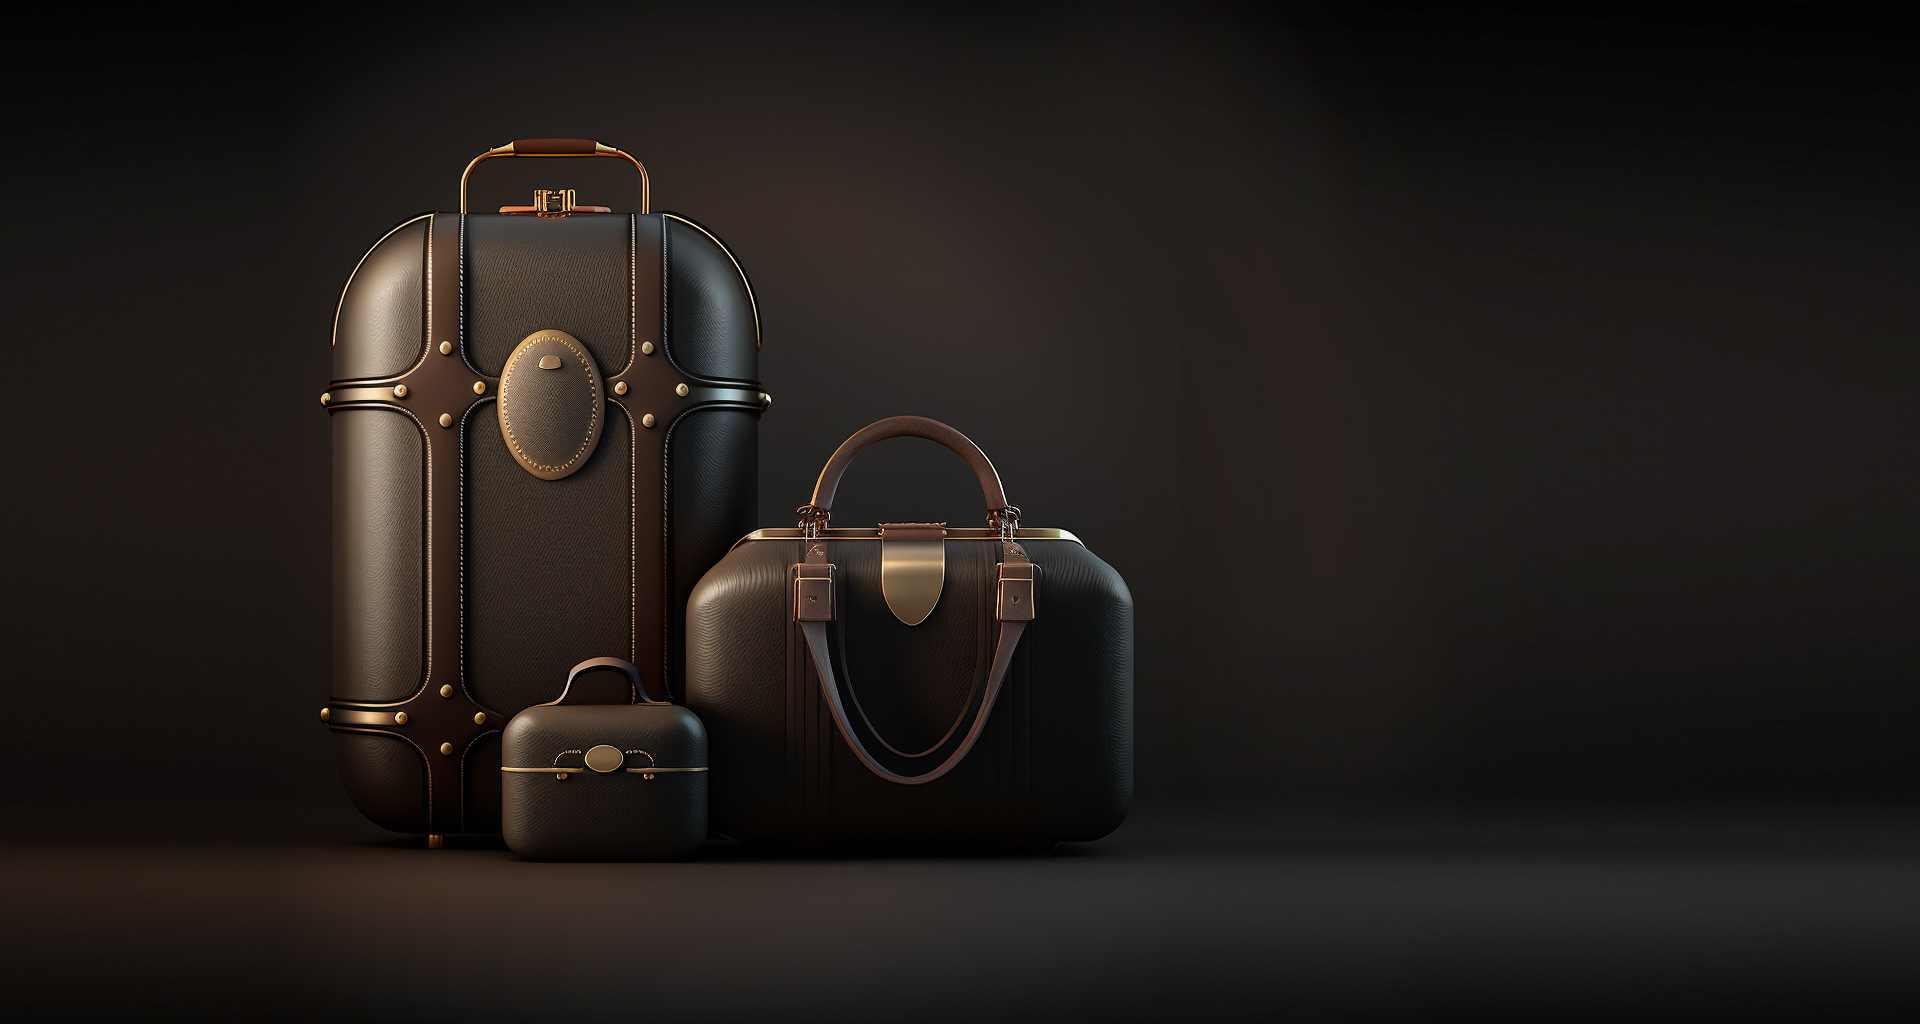 Beautiful Luggage Set